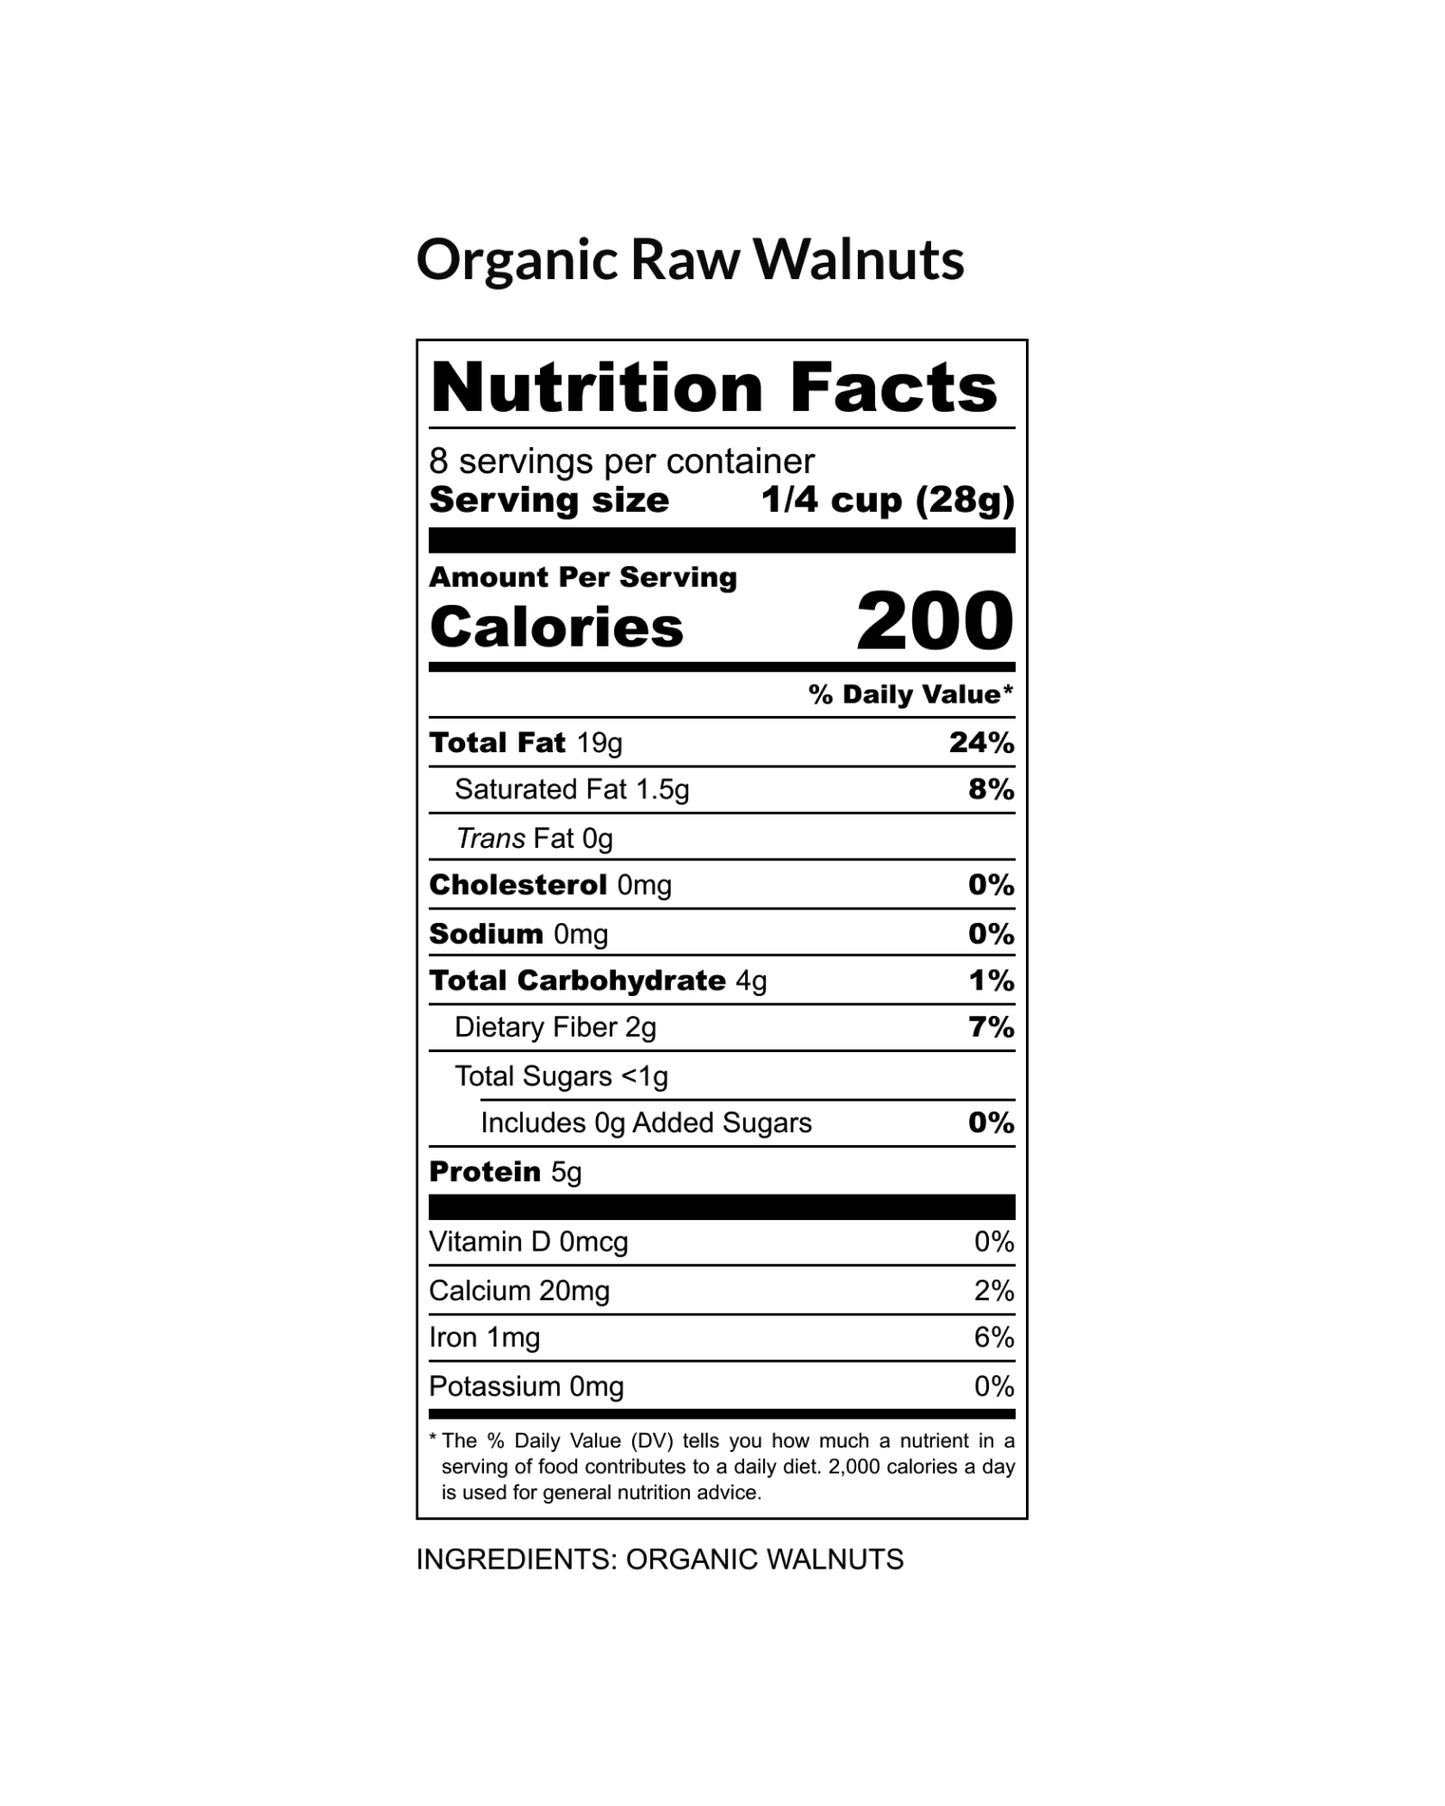 Organic Raw & Unsalted Walnuts